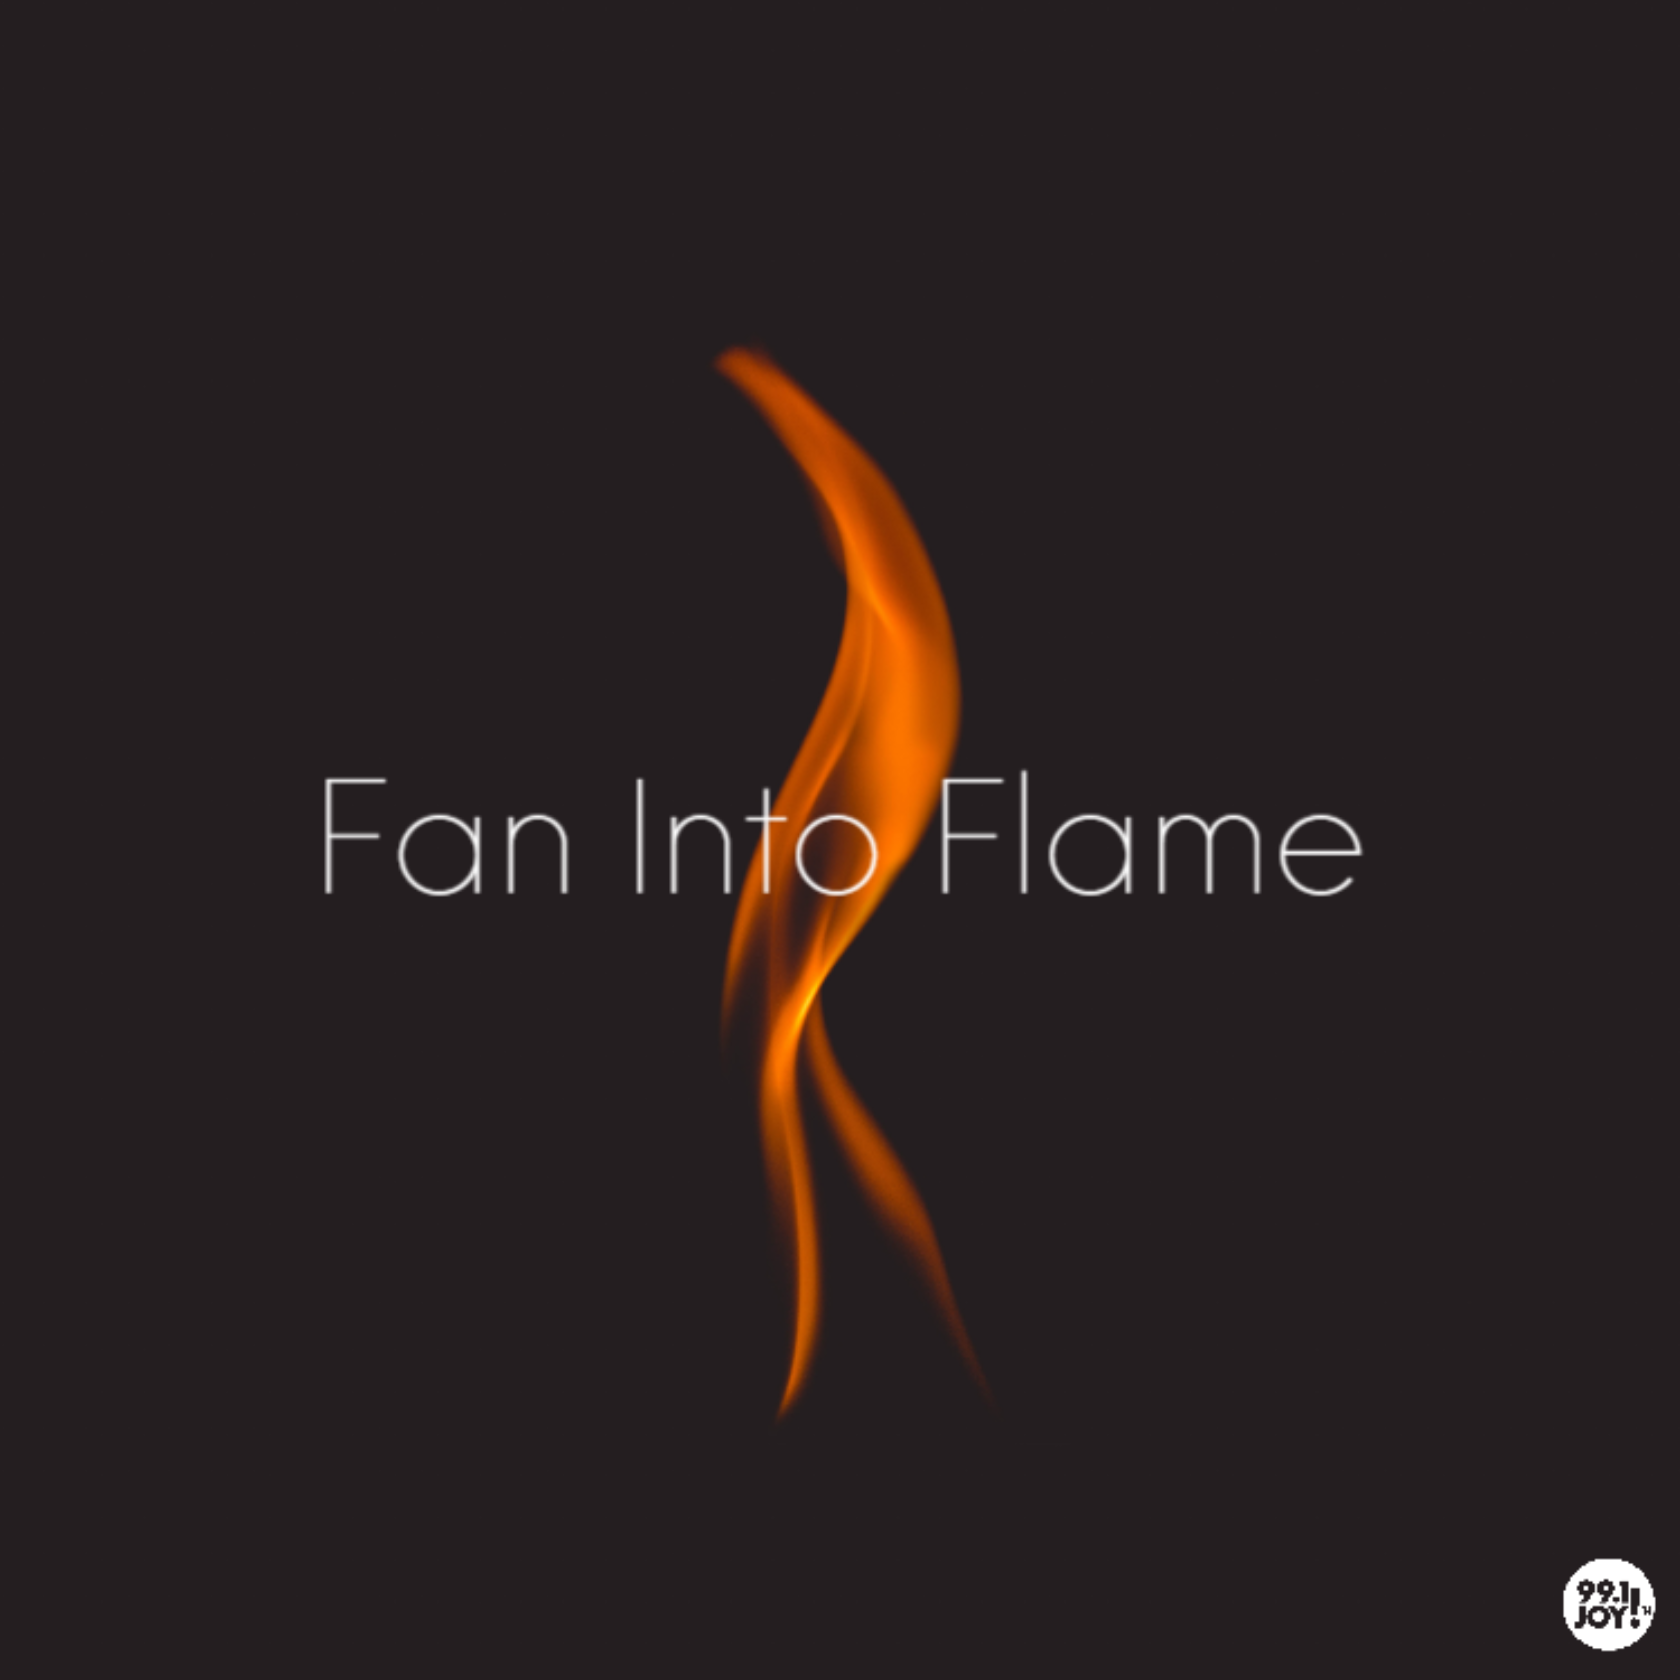 Fan Into Flame